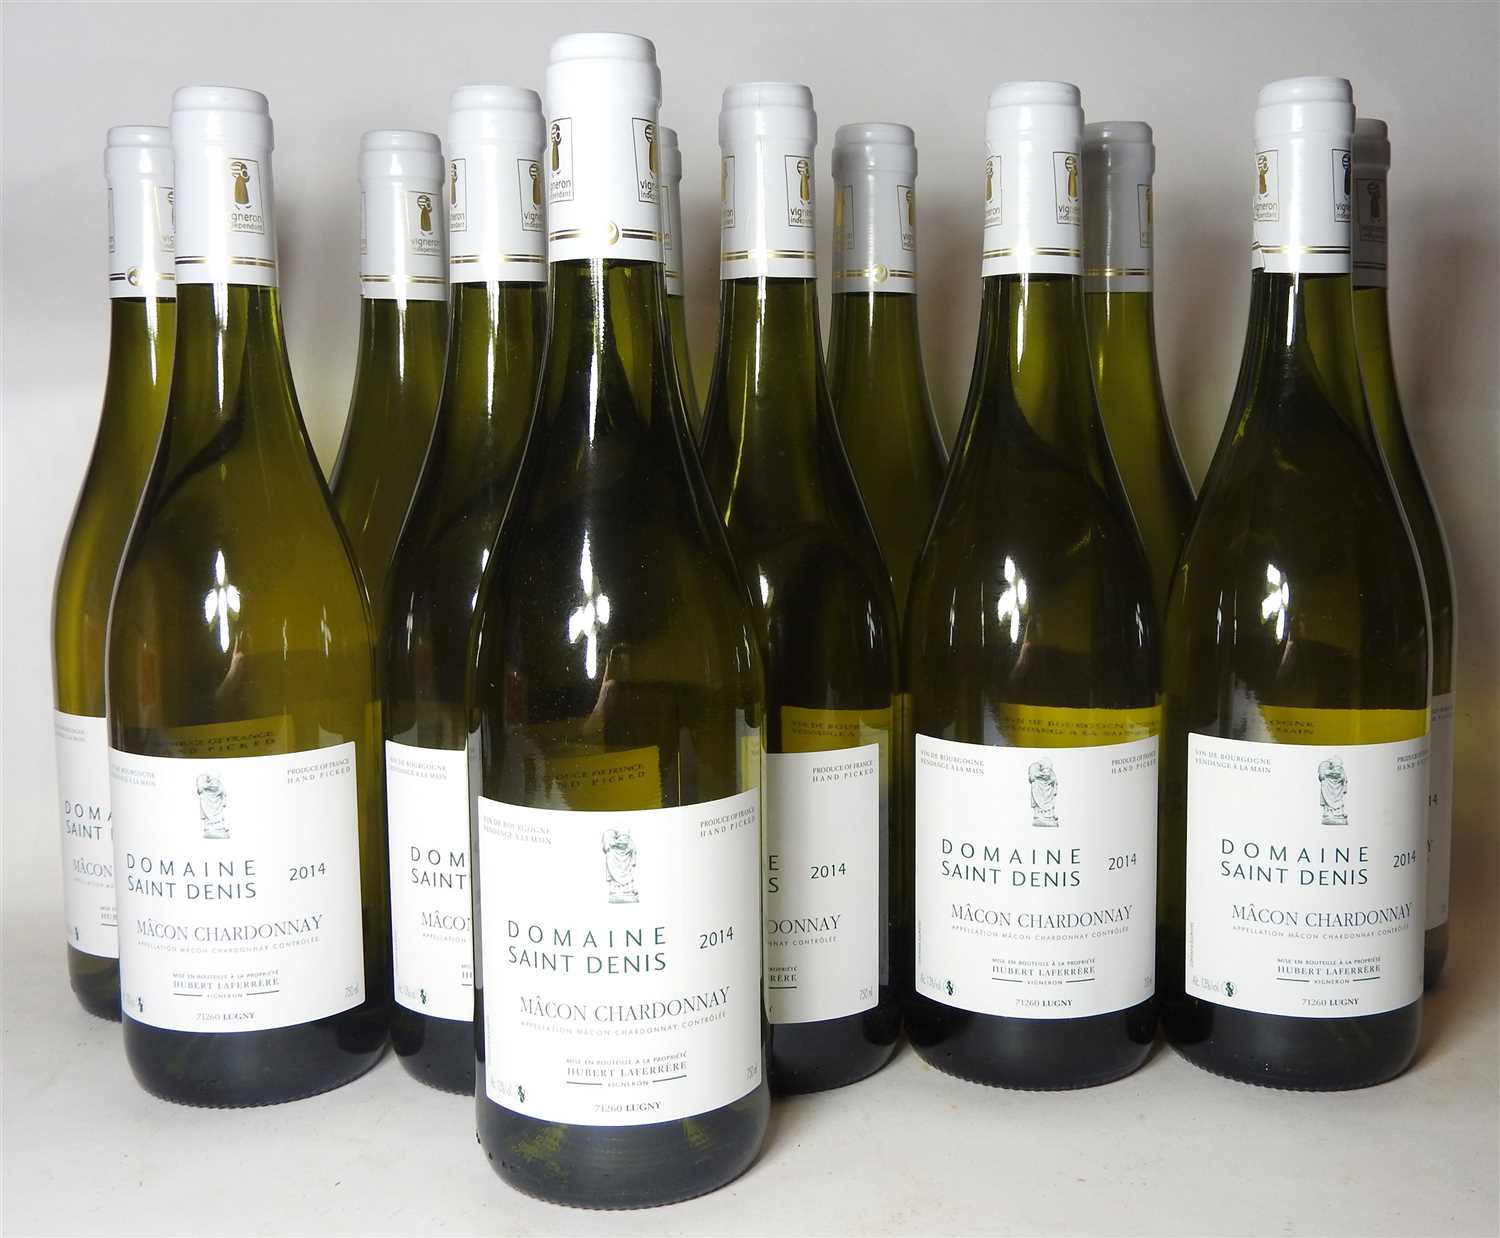 Lot 17 - Domaine Saint Denis, Mâcon Chardonnay, 2014, twenty-four bottles (boxed)